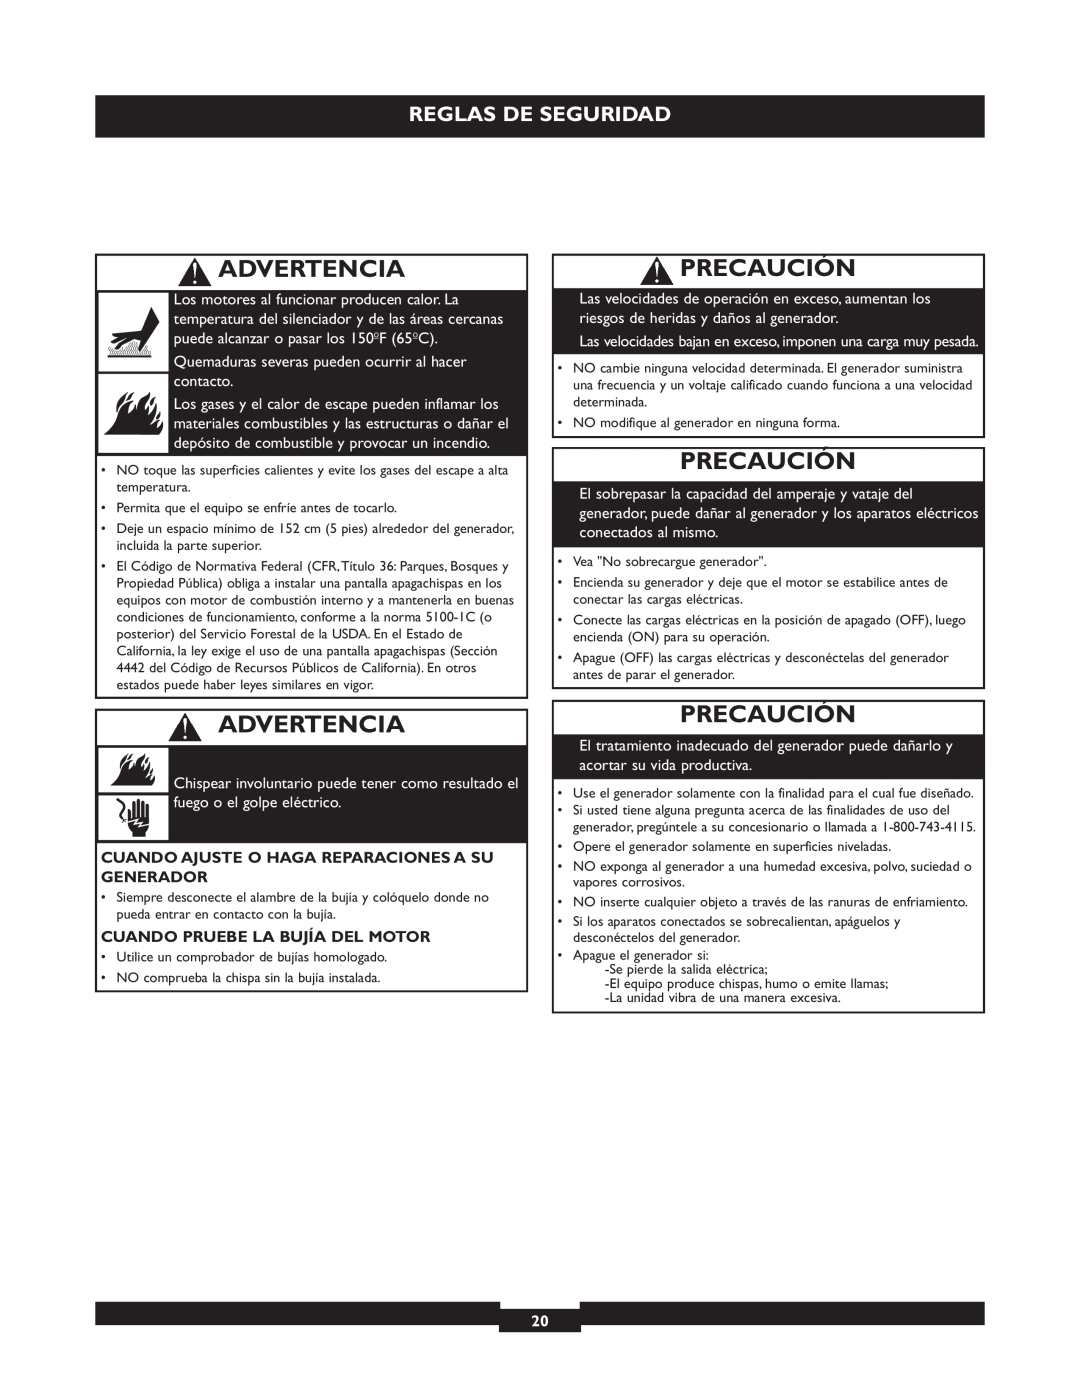 Briggs & Stratton 30205 manual Precaución, Advertencia, Reglas De Seguridad 